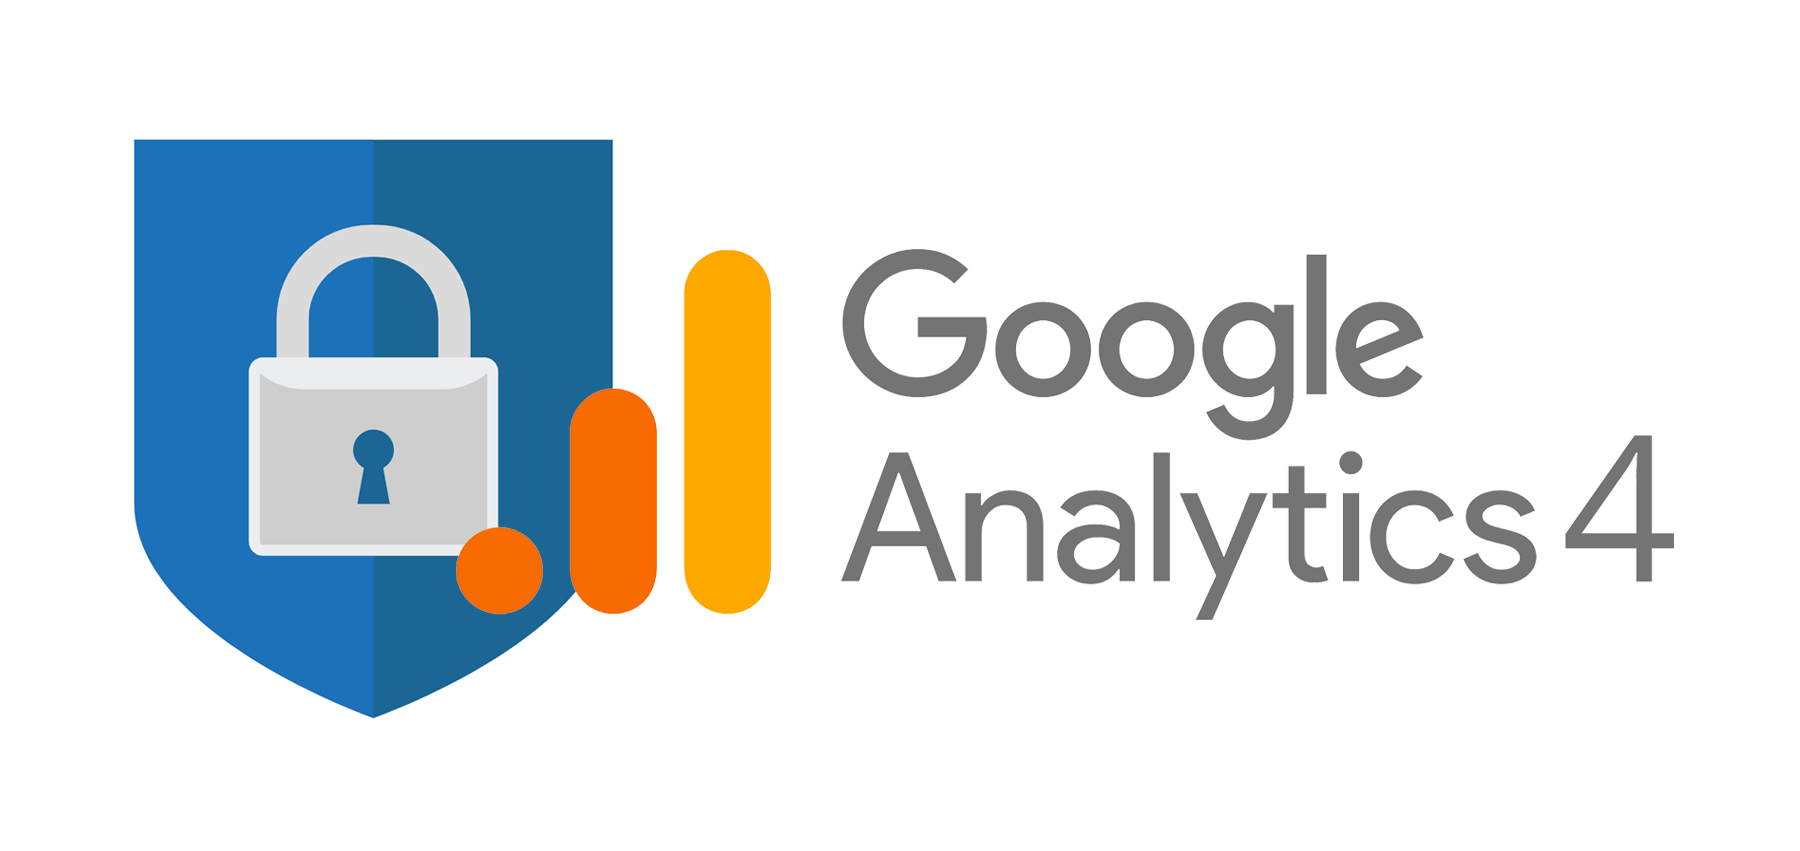 Google Analytics 4: FAQ & Datenschutz-Checkliste für die Umstellung am 1. Juli 2023